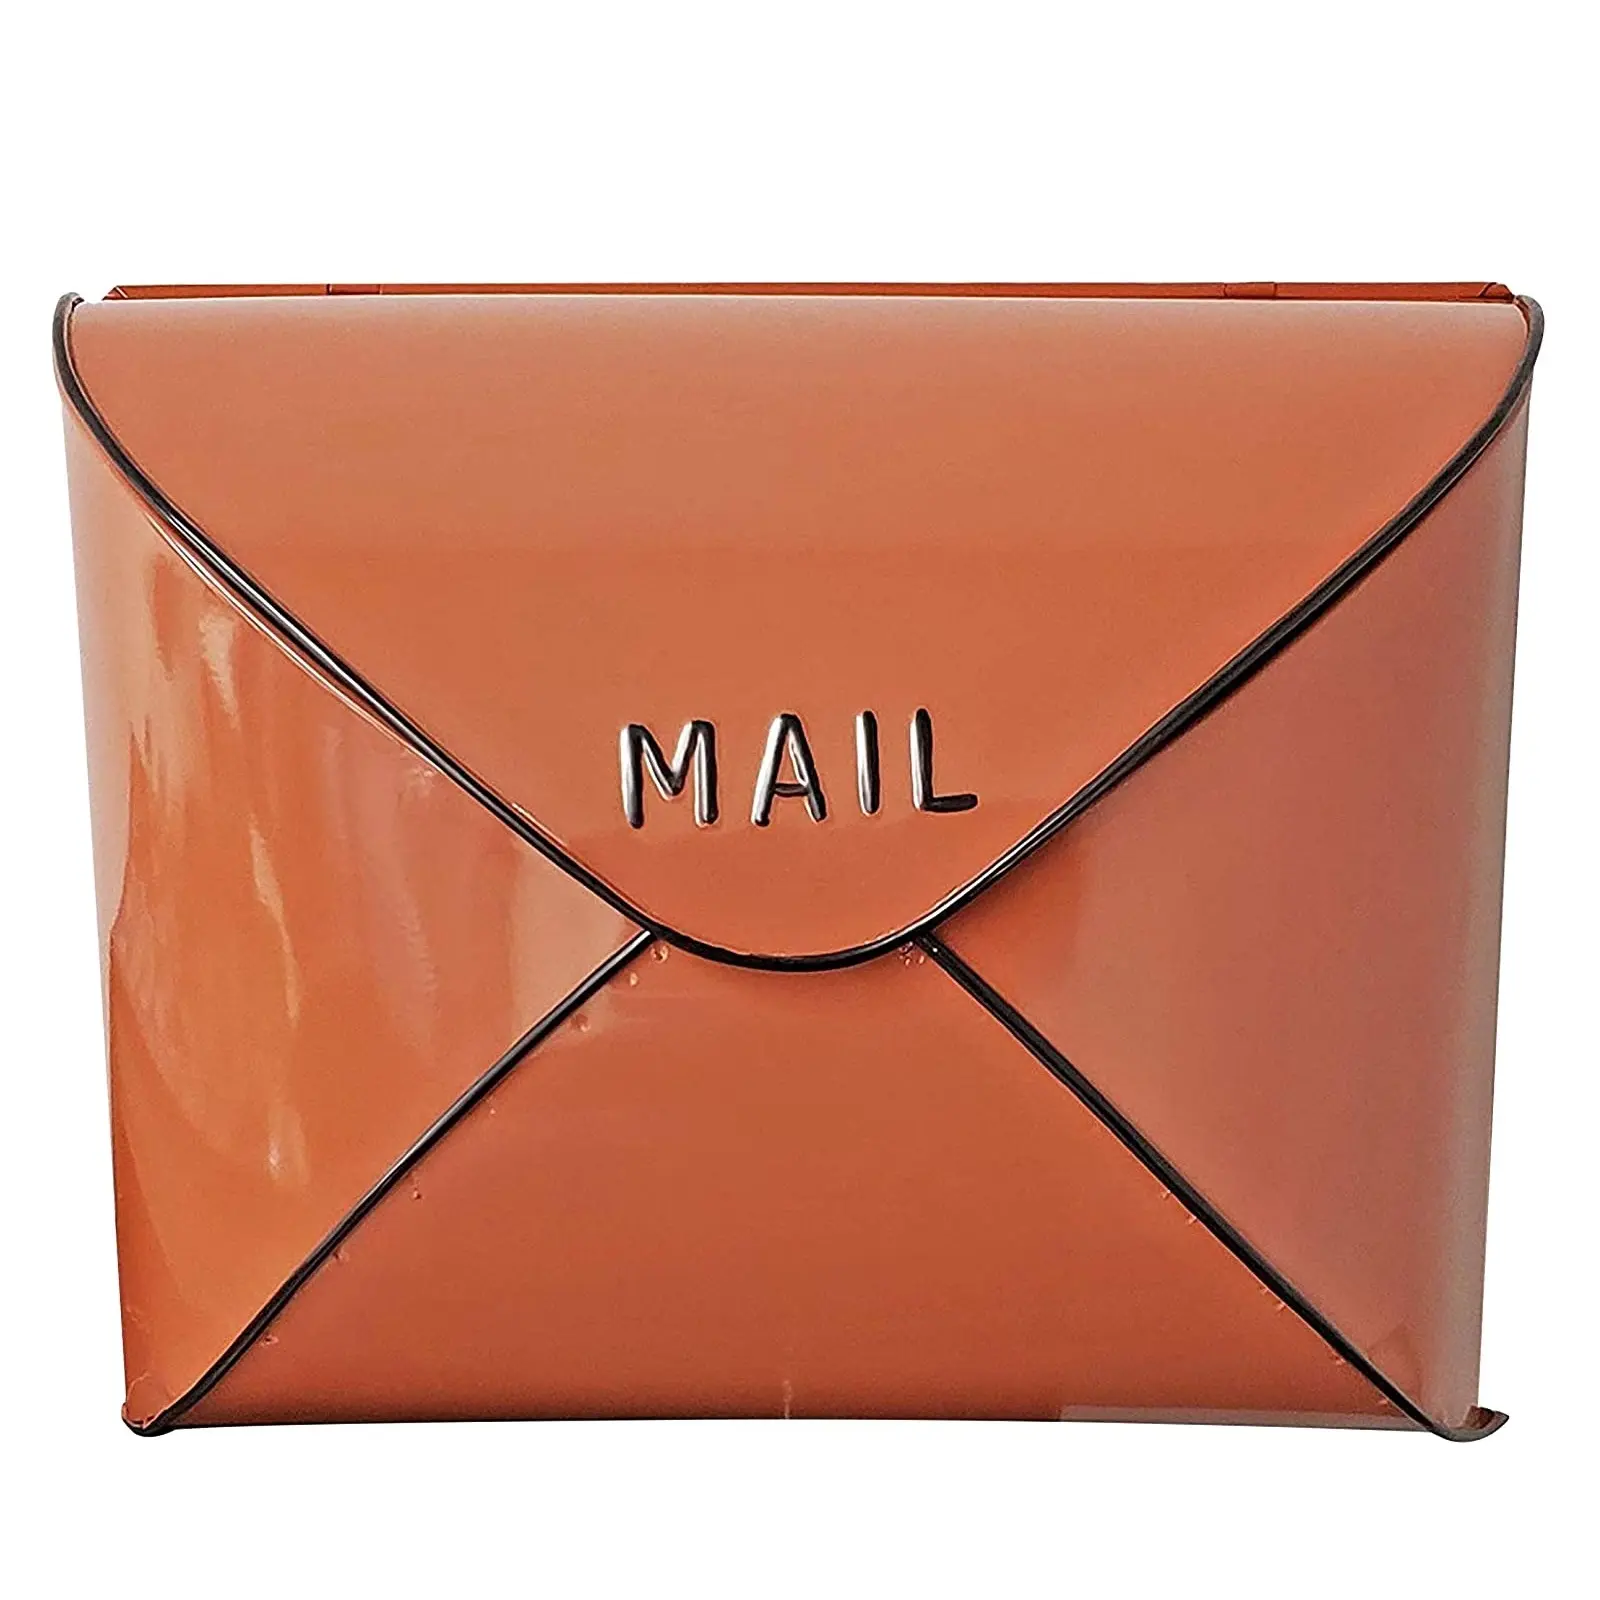 Caixa de metal personalizada de forma e tamanho, cor laranja, feita à mão, melhor caixa de correio, exige, pendurar na parede